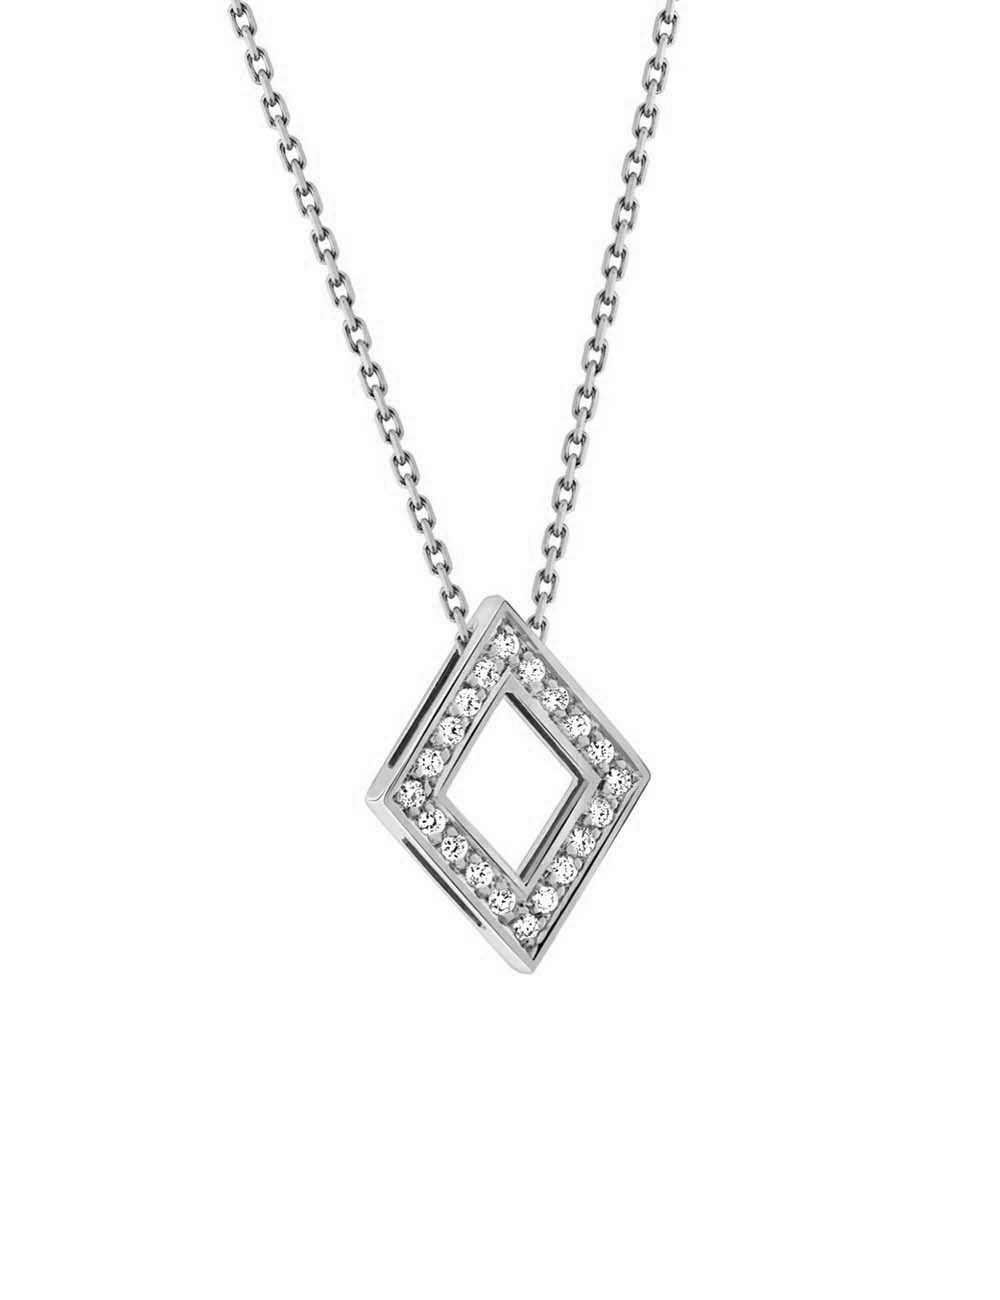 Le cadeau idéal, un collier femme luxe en or blanc et diamants blancs en forme de losange